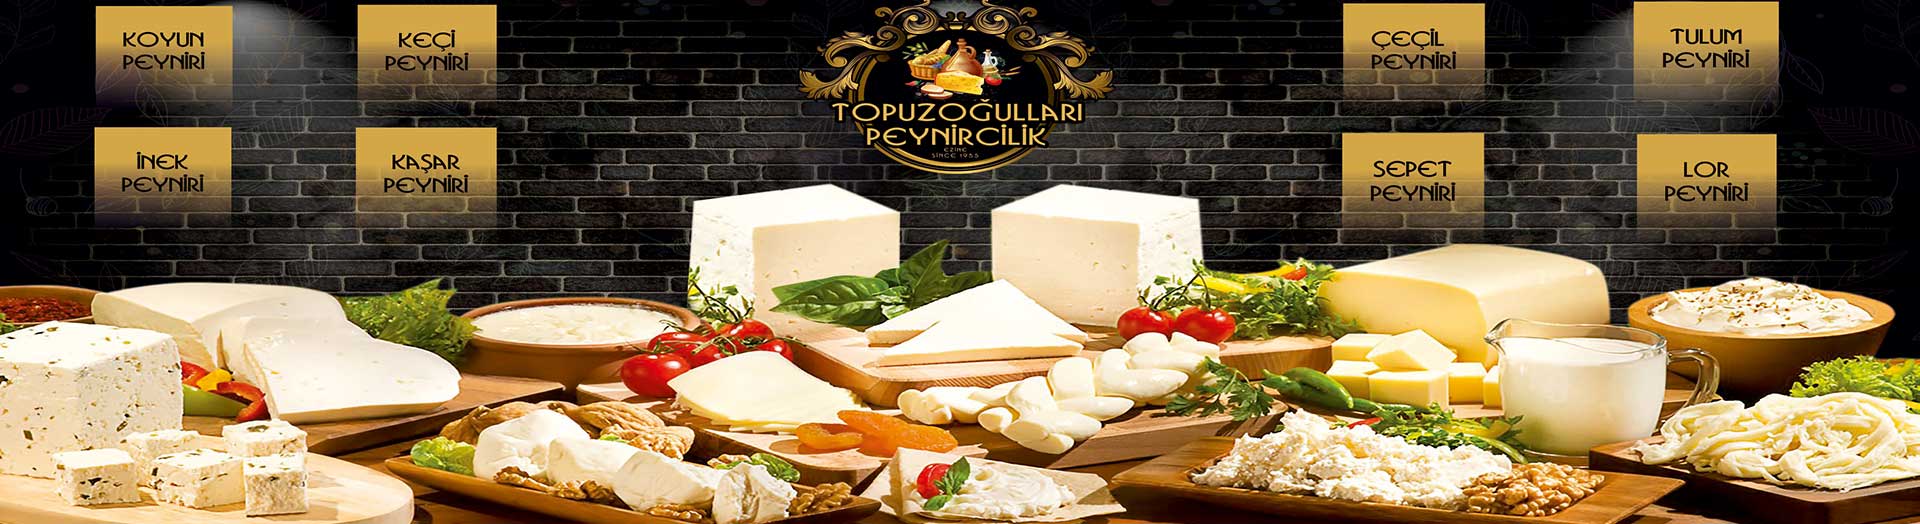 ezine peyniri topuzoğulları doğal ürünler köy ürünleri en iyi ezine peyniri